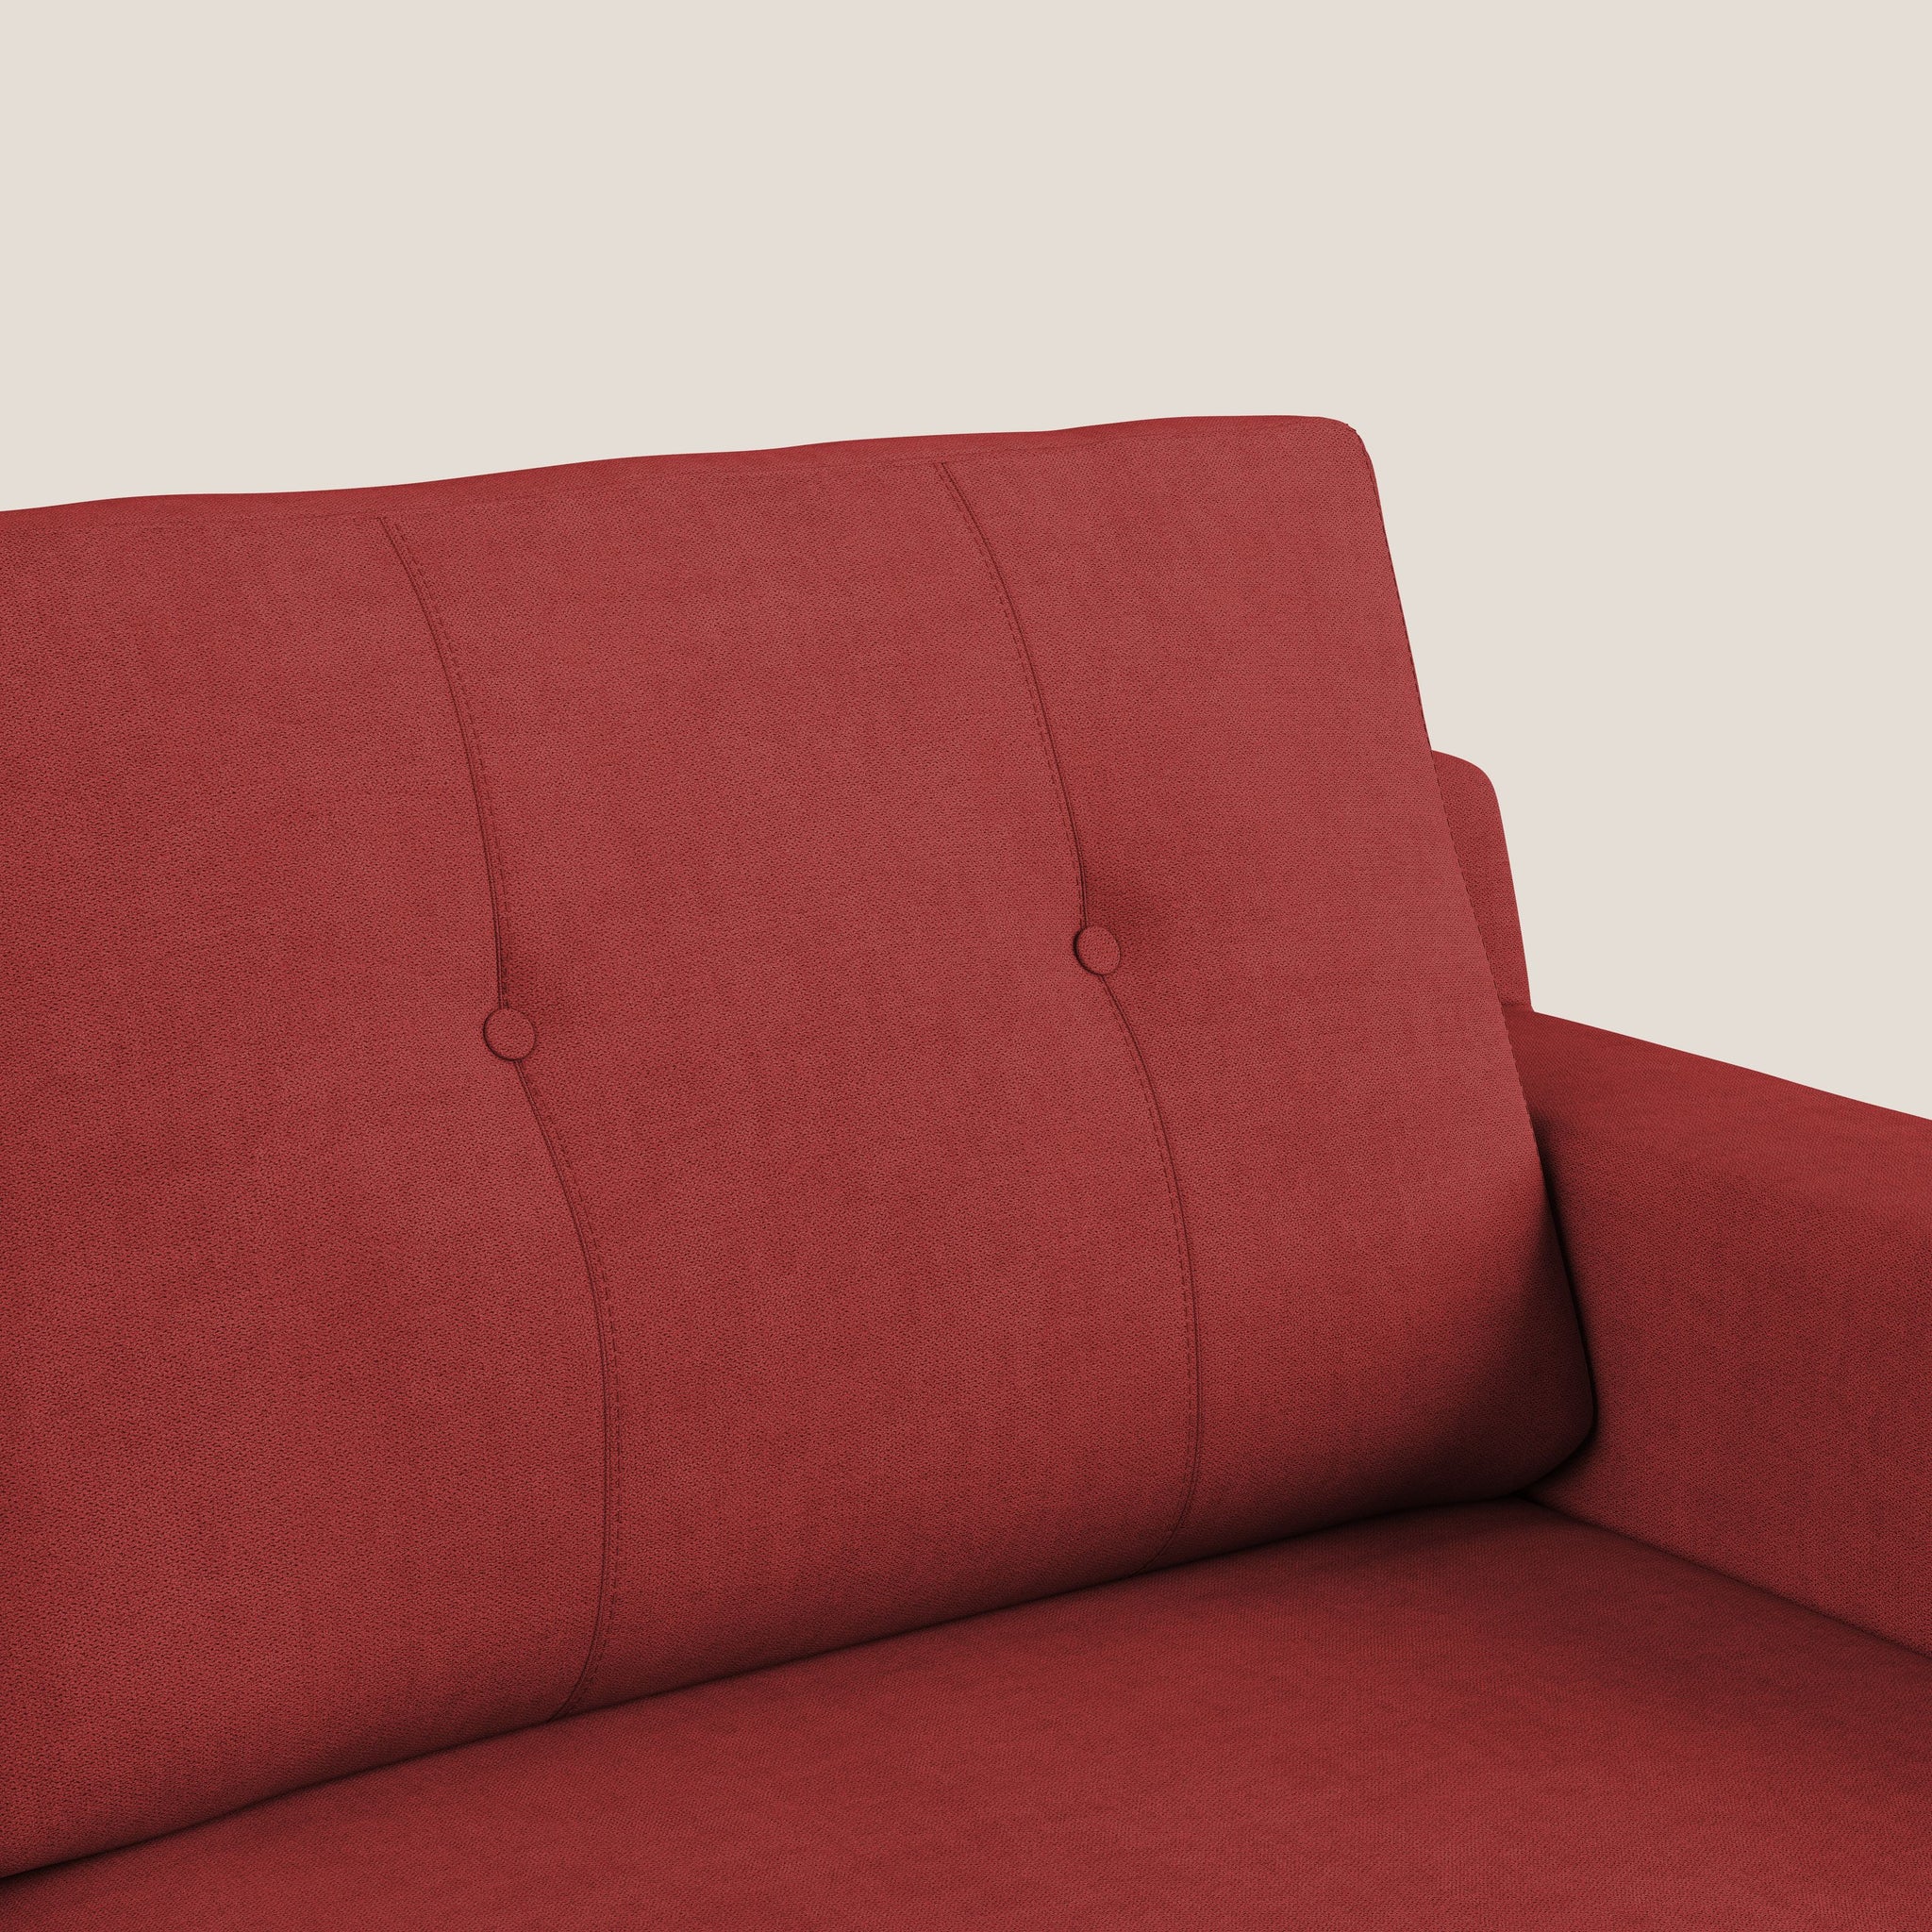 Danish divano moderno in tessuto morbido impermeabile T02